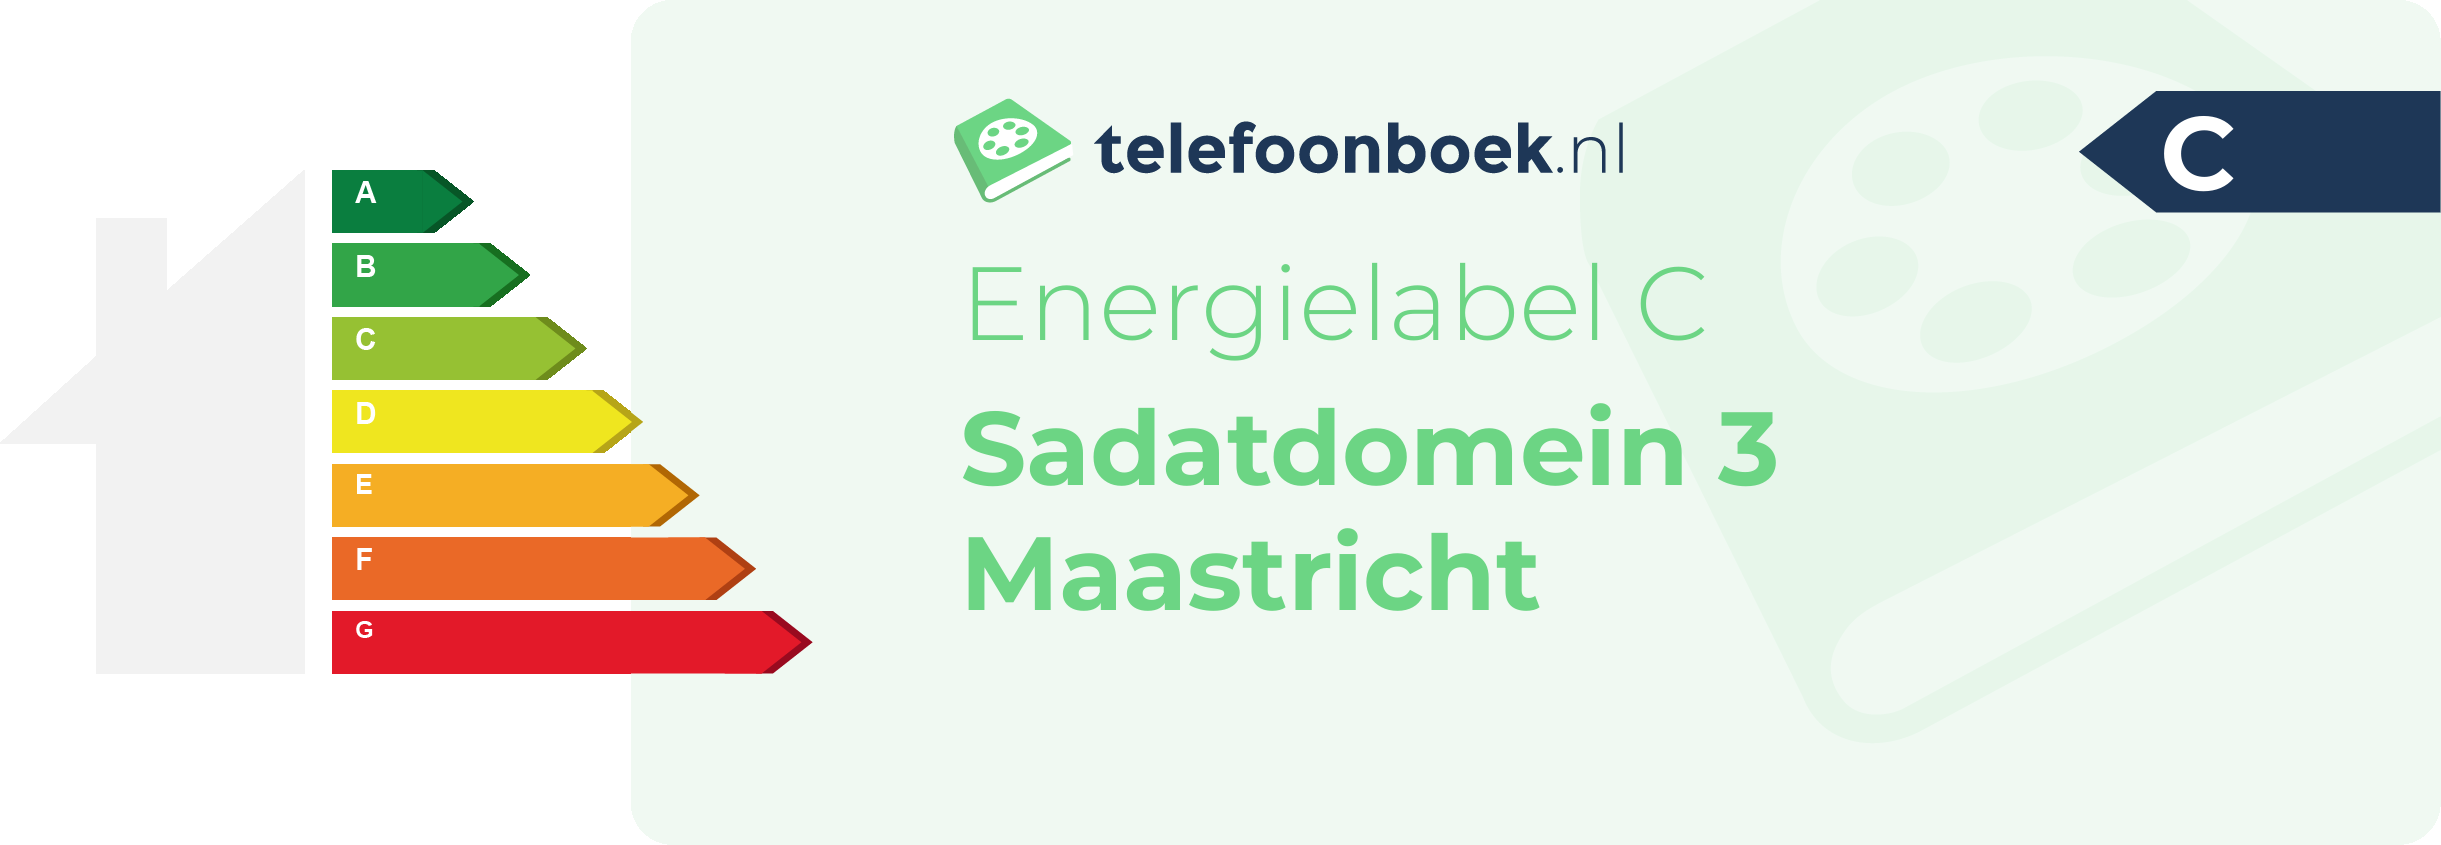 Energielabel Sadatdomein 3 Maastricht